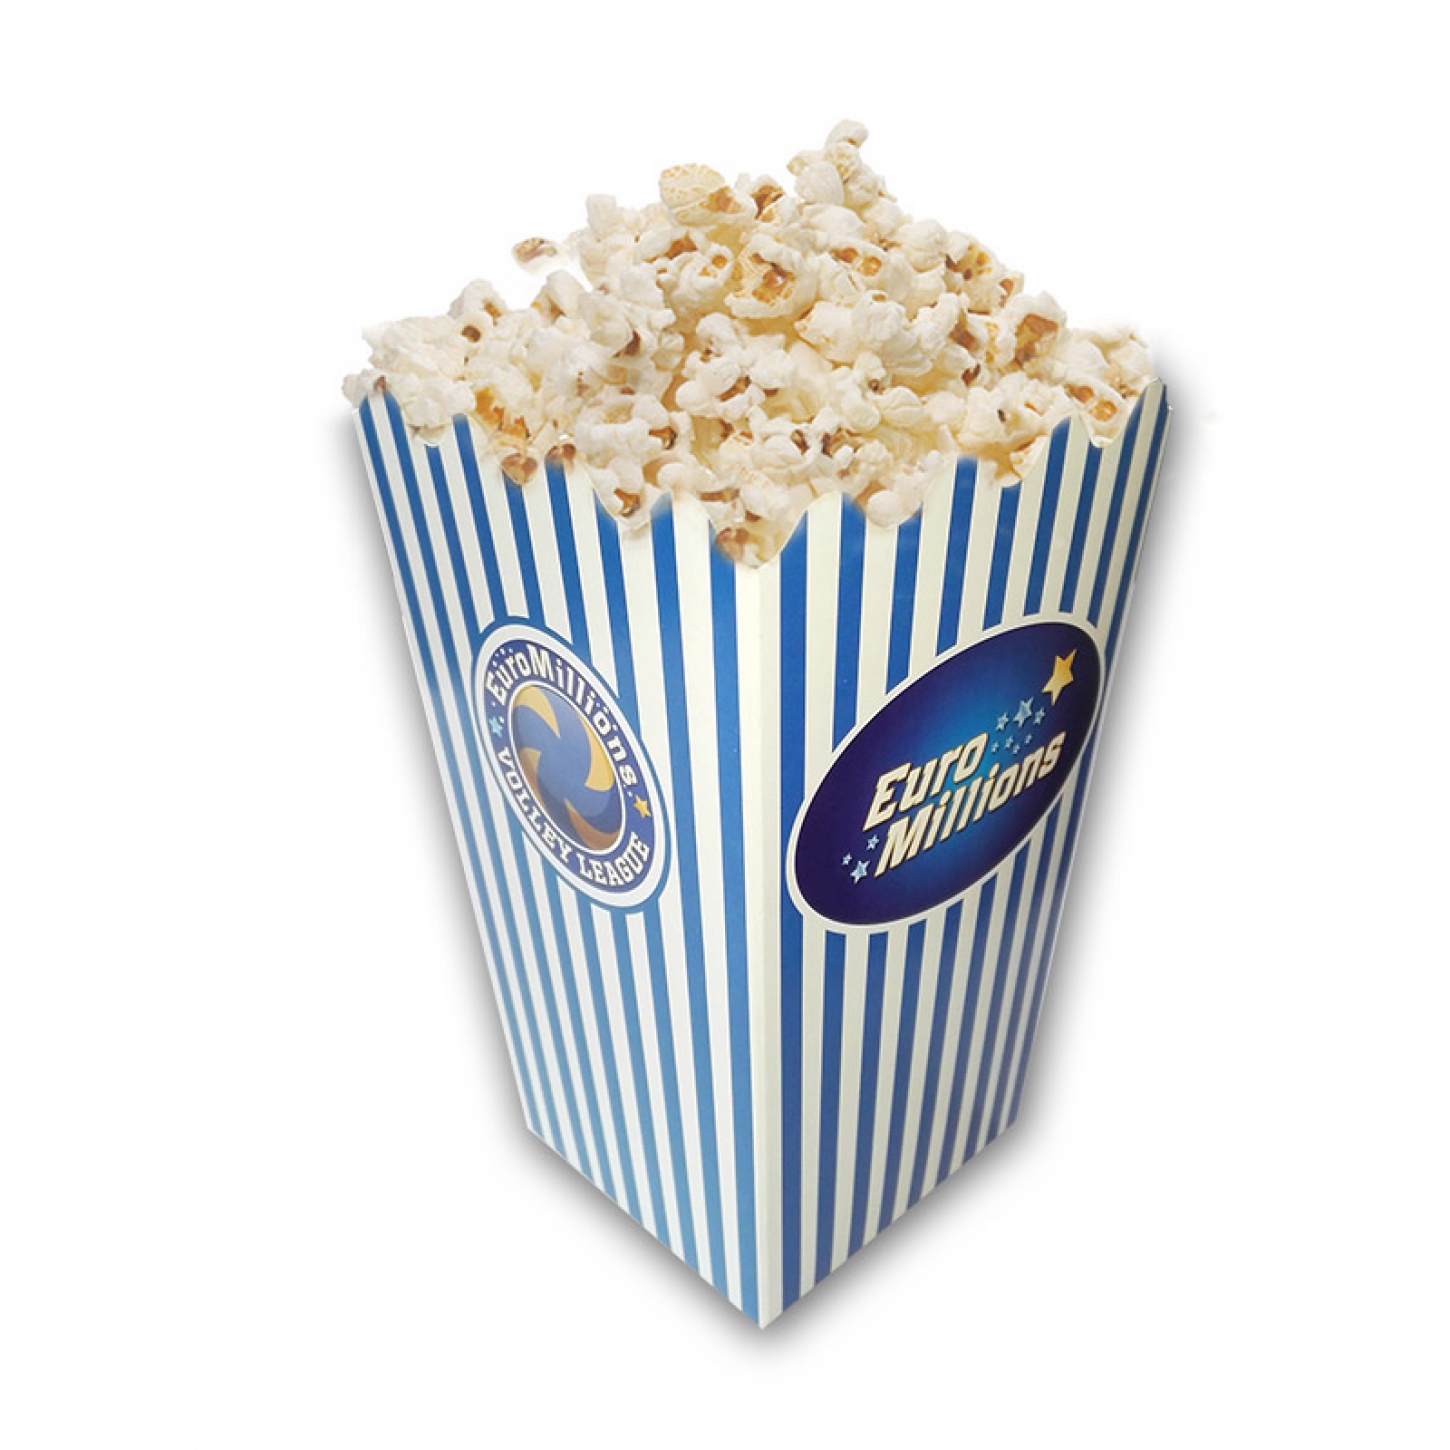 Meer info over bedrukte popcorn doosjes